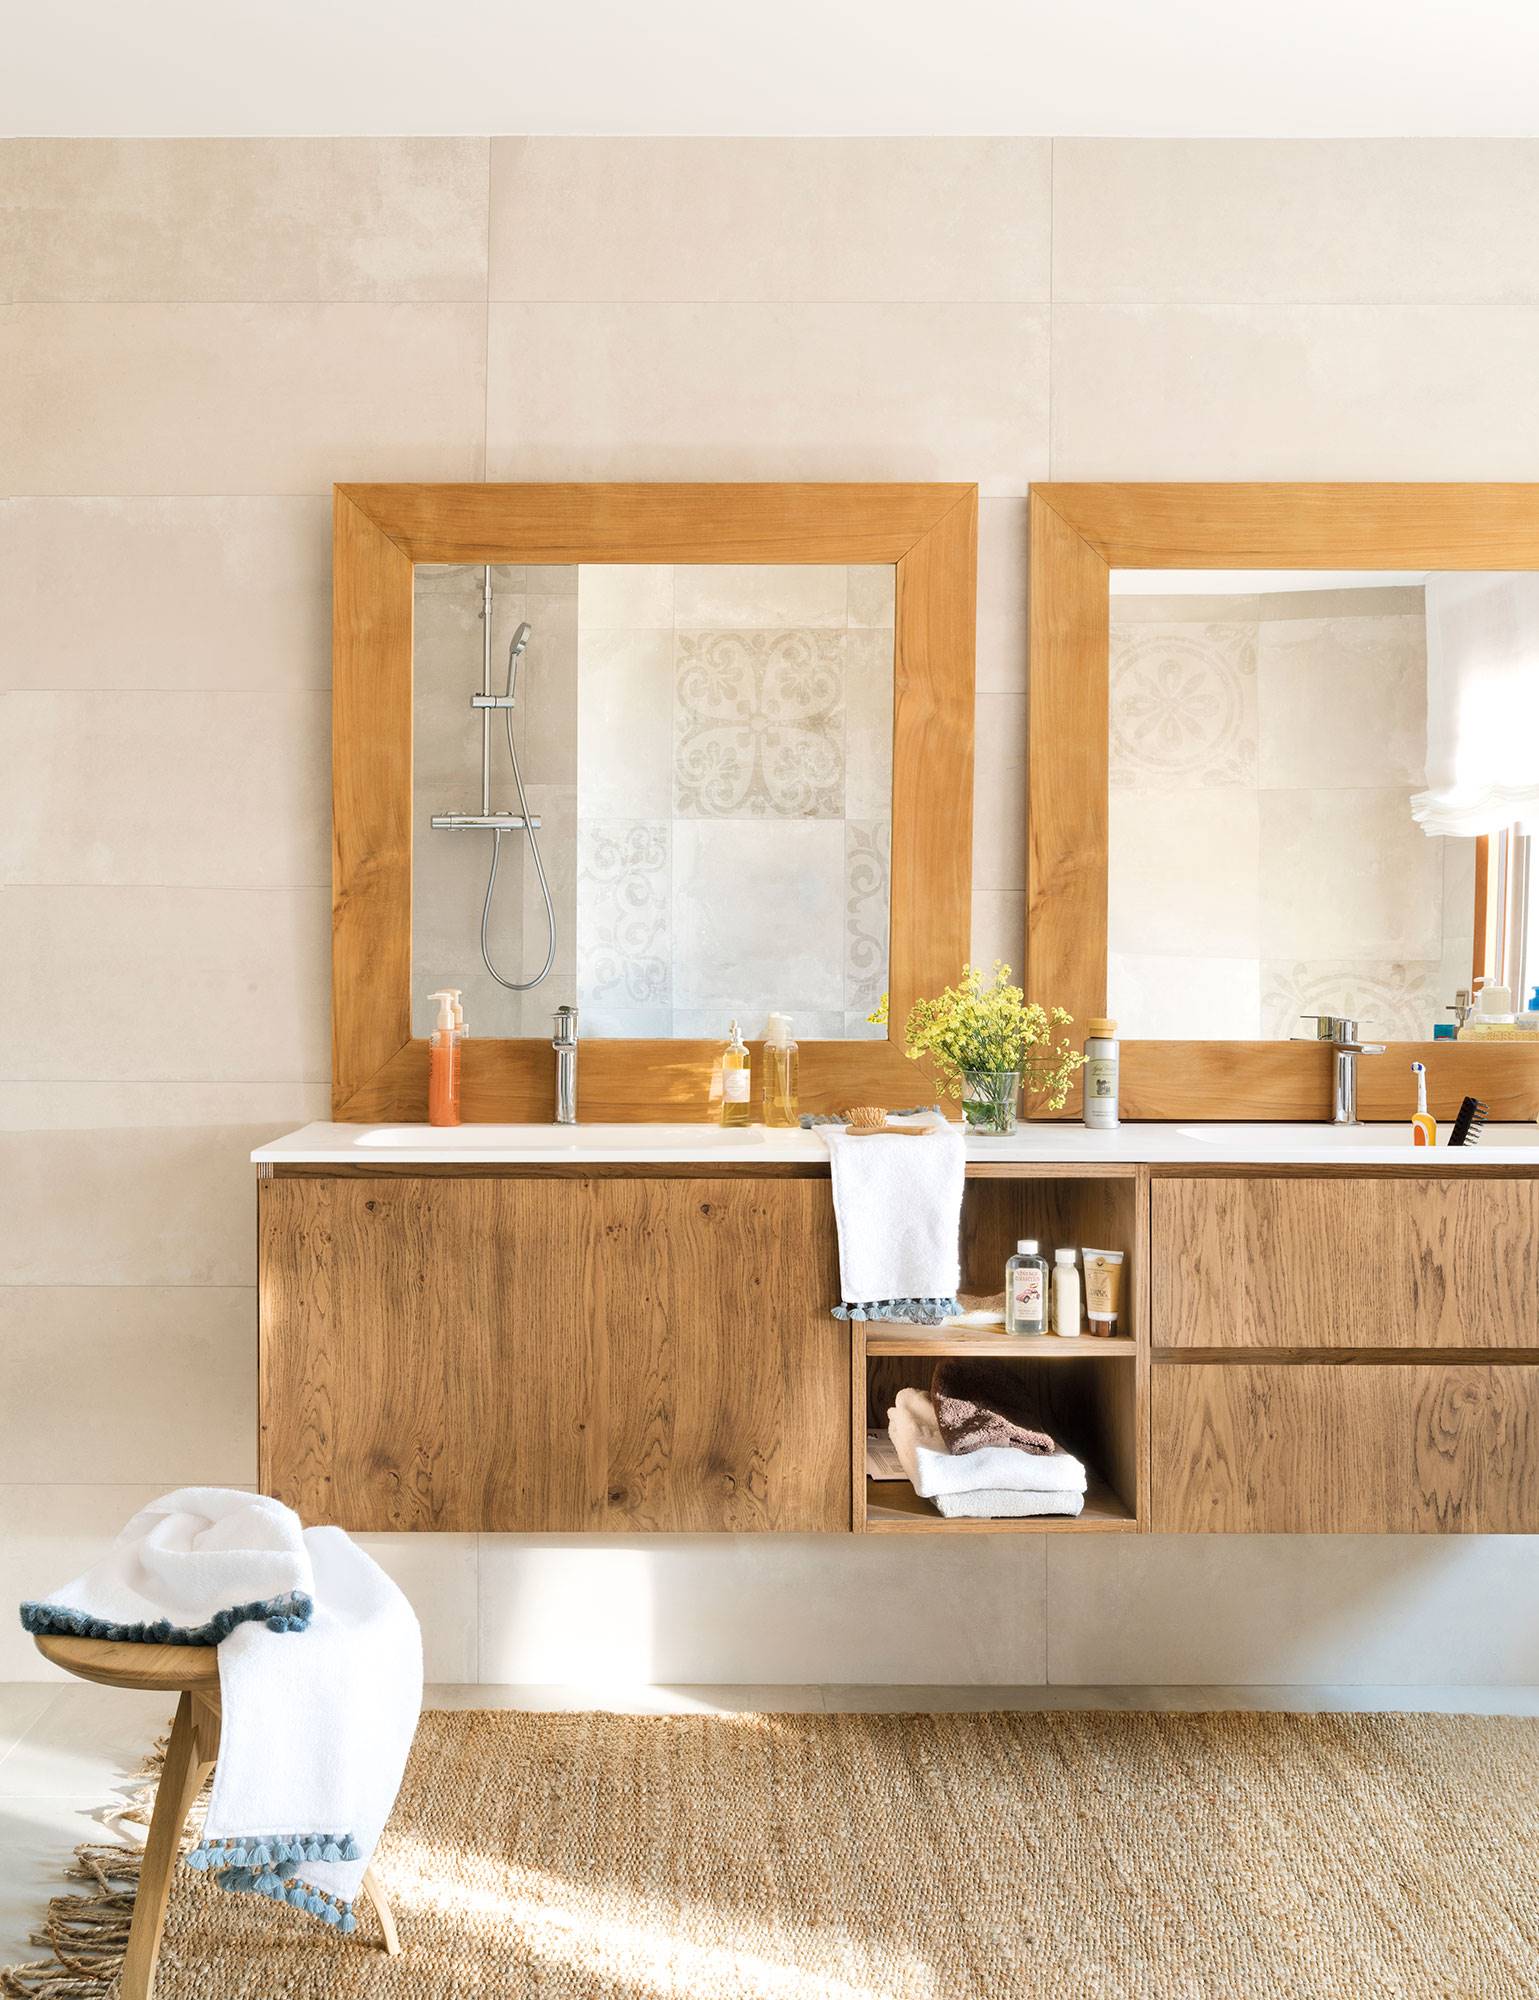 Baño con dos espejos iguales y con marcos de madera.